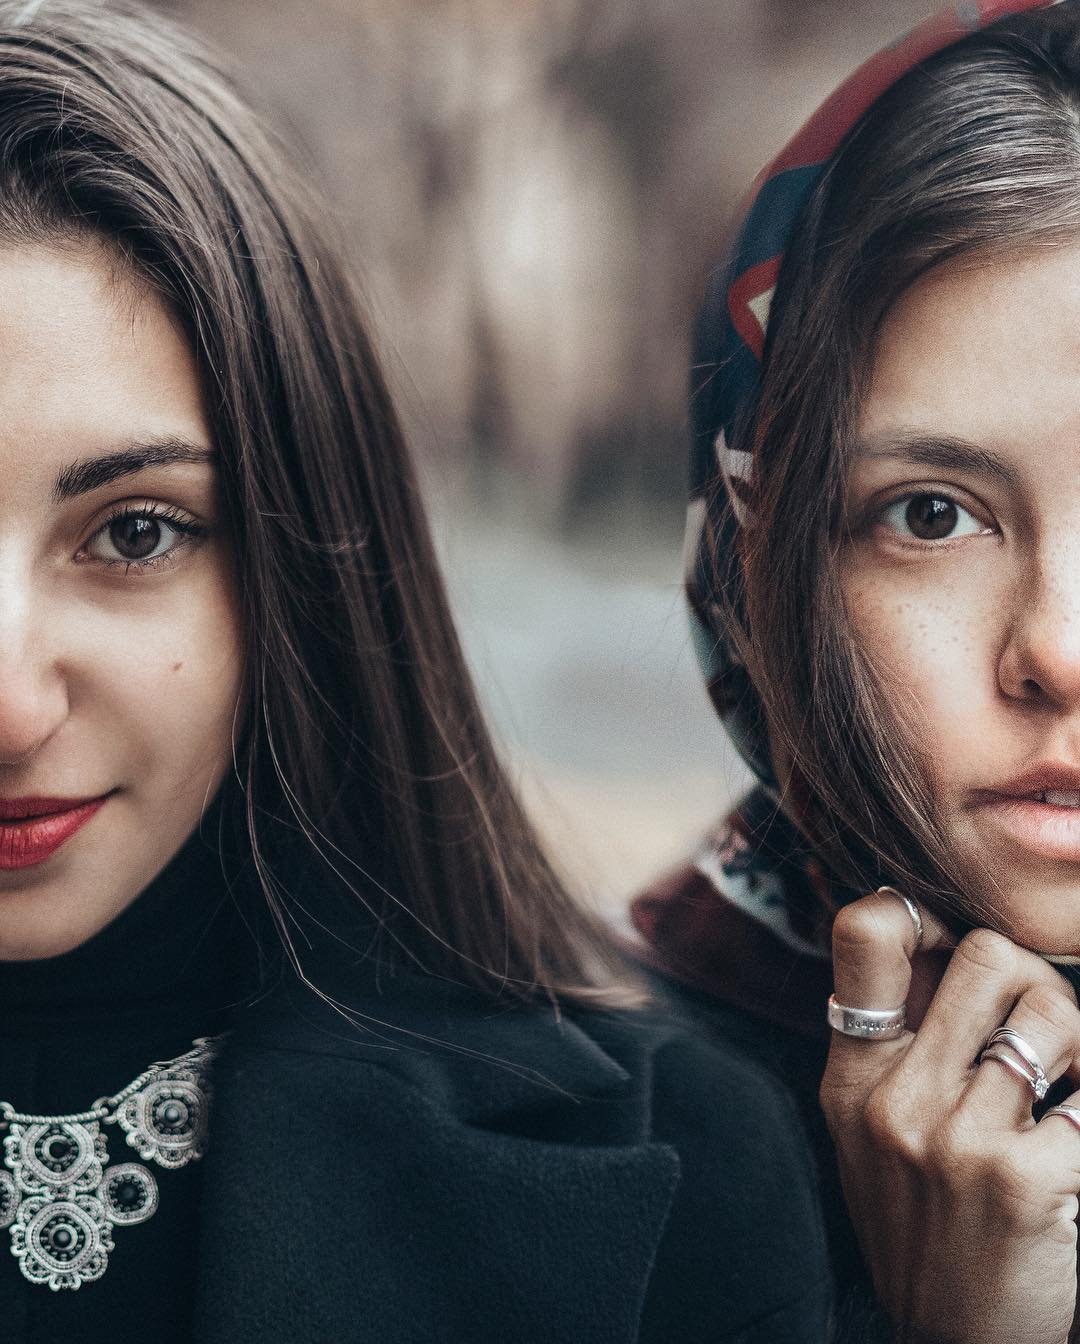 Россиянка демонстрирует красоту девушек со всего мира, делая с ними совместные фото города,история,самостоятельные путешествия